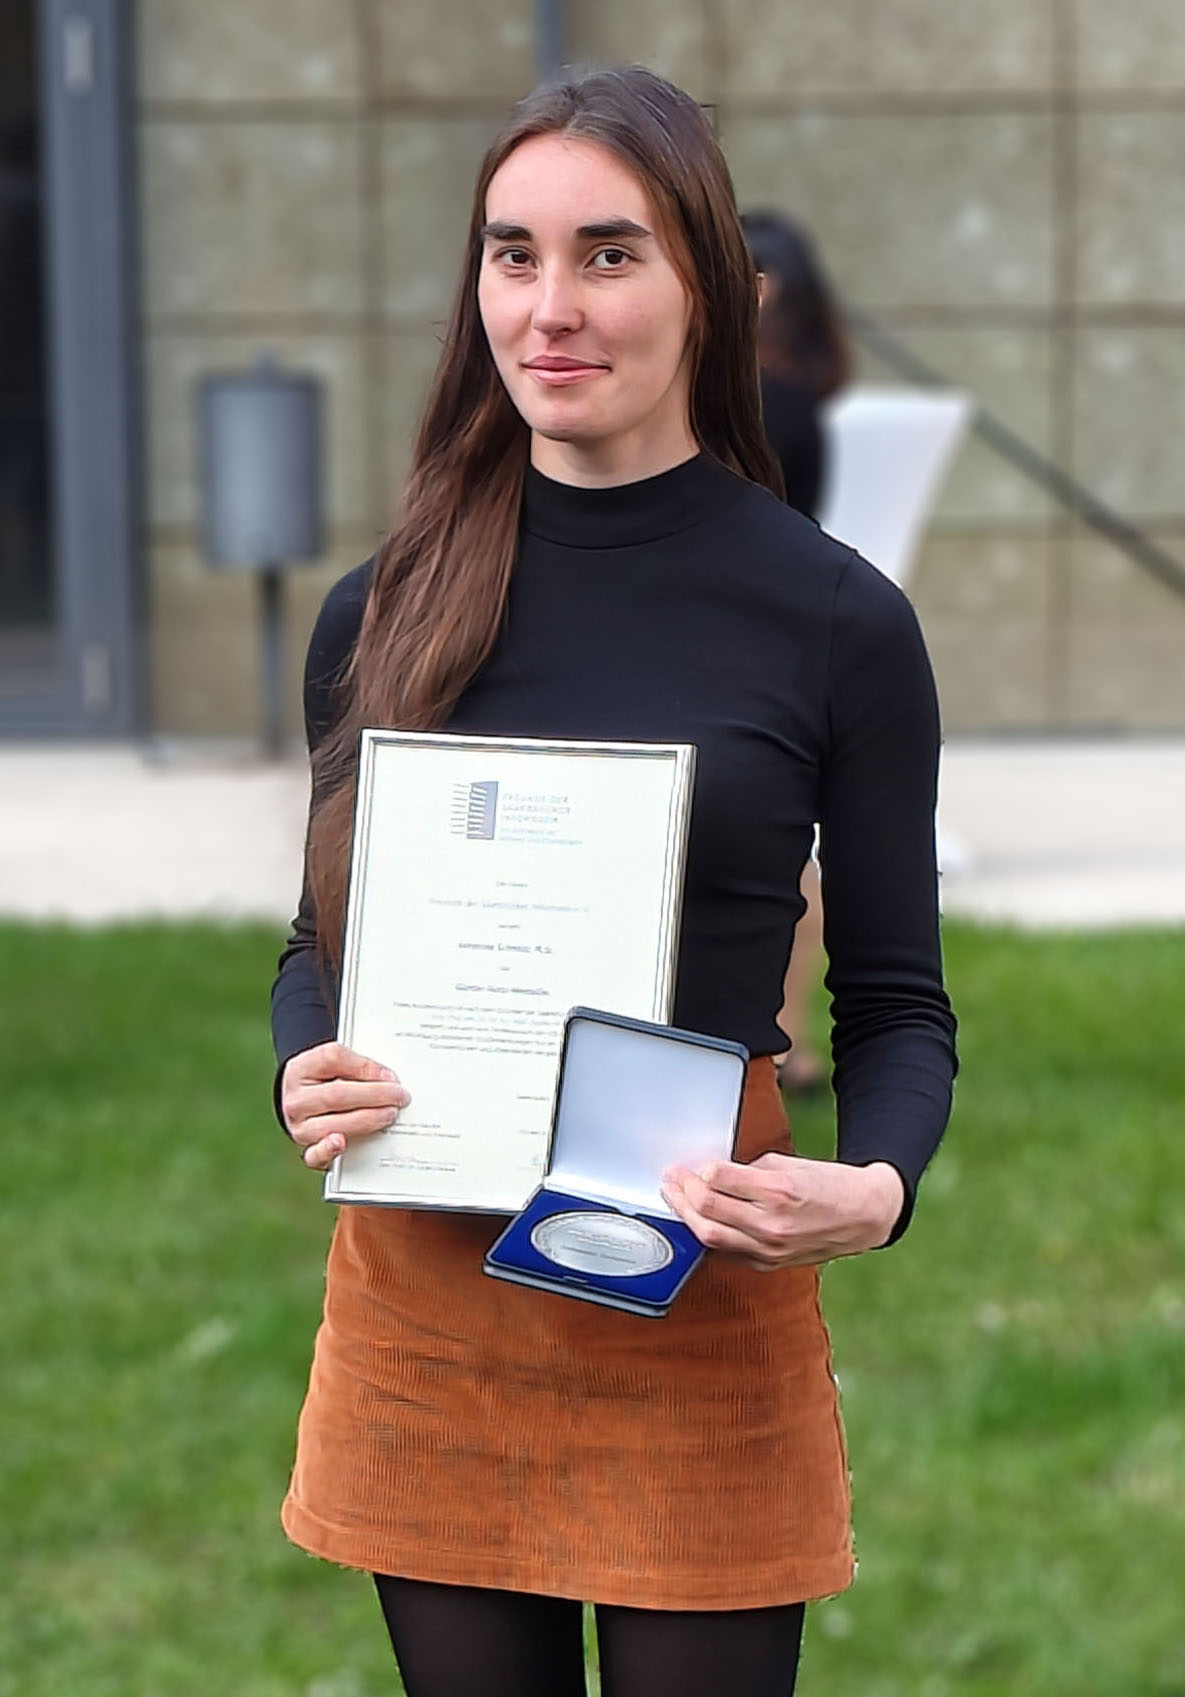 Johanna was awarded the Günther Hotz Medal.